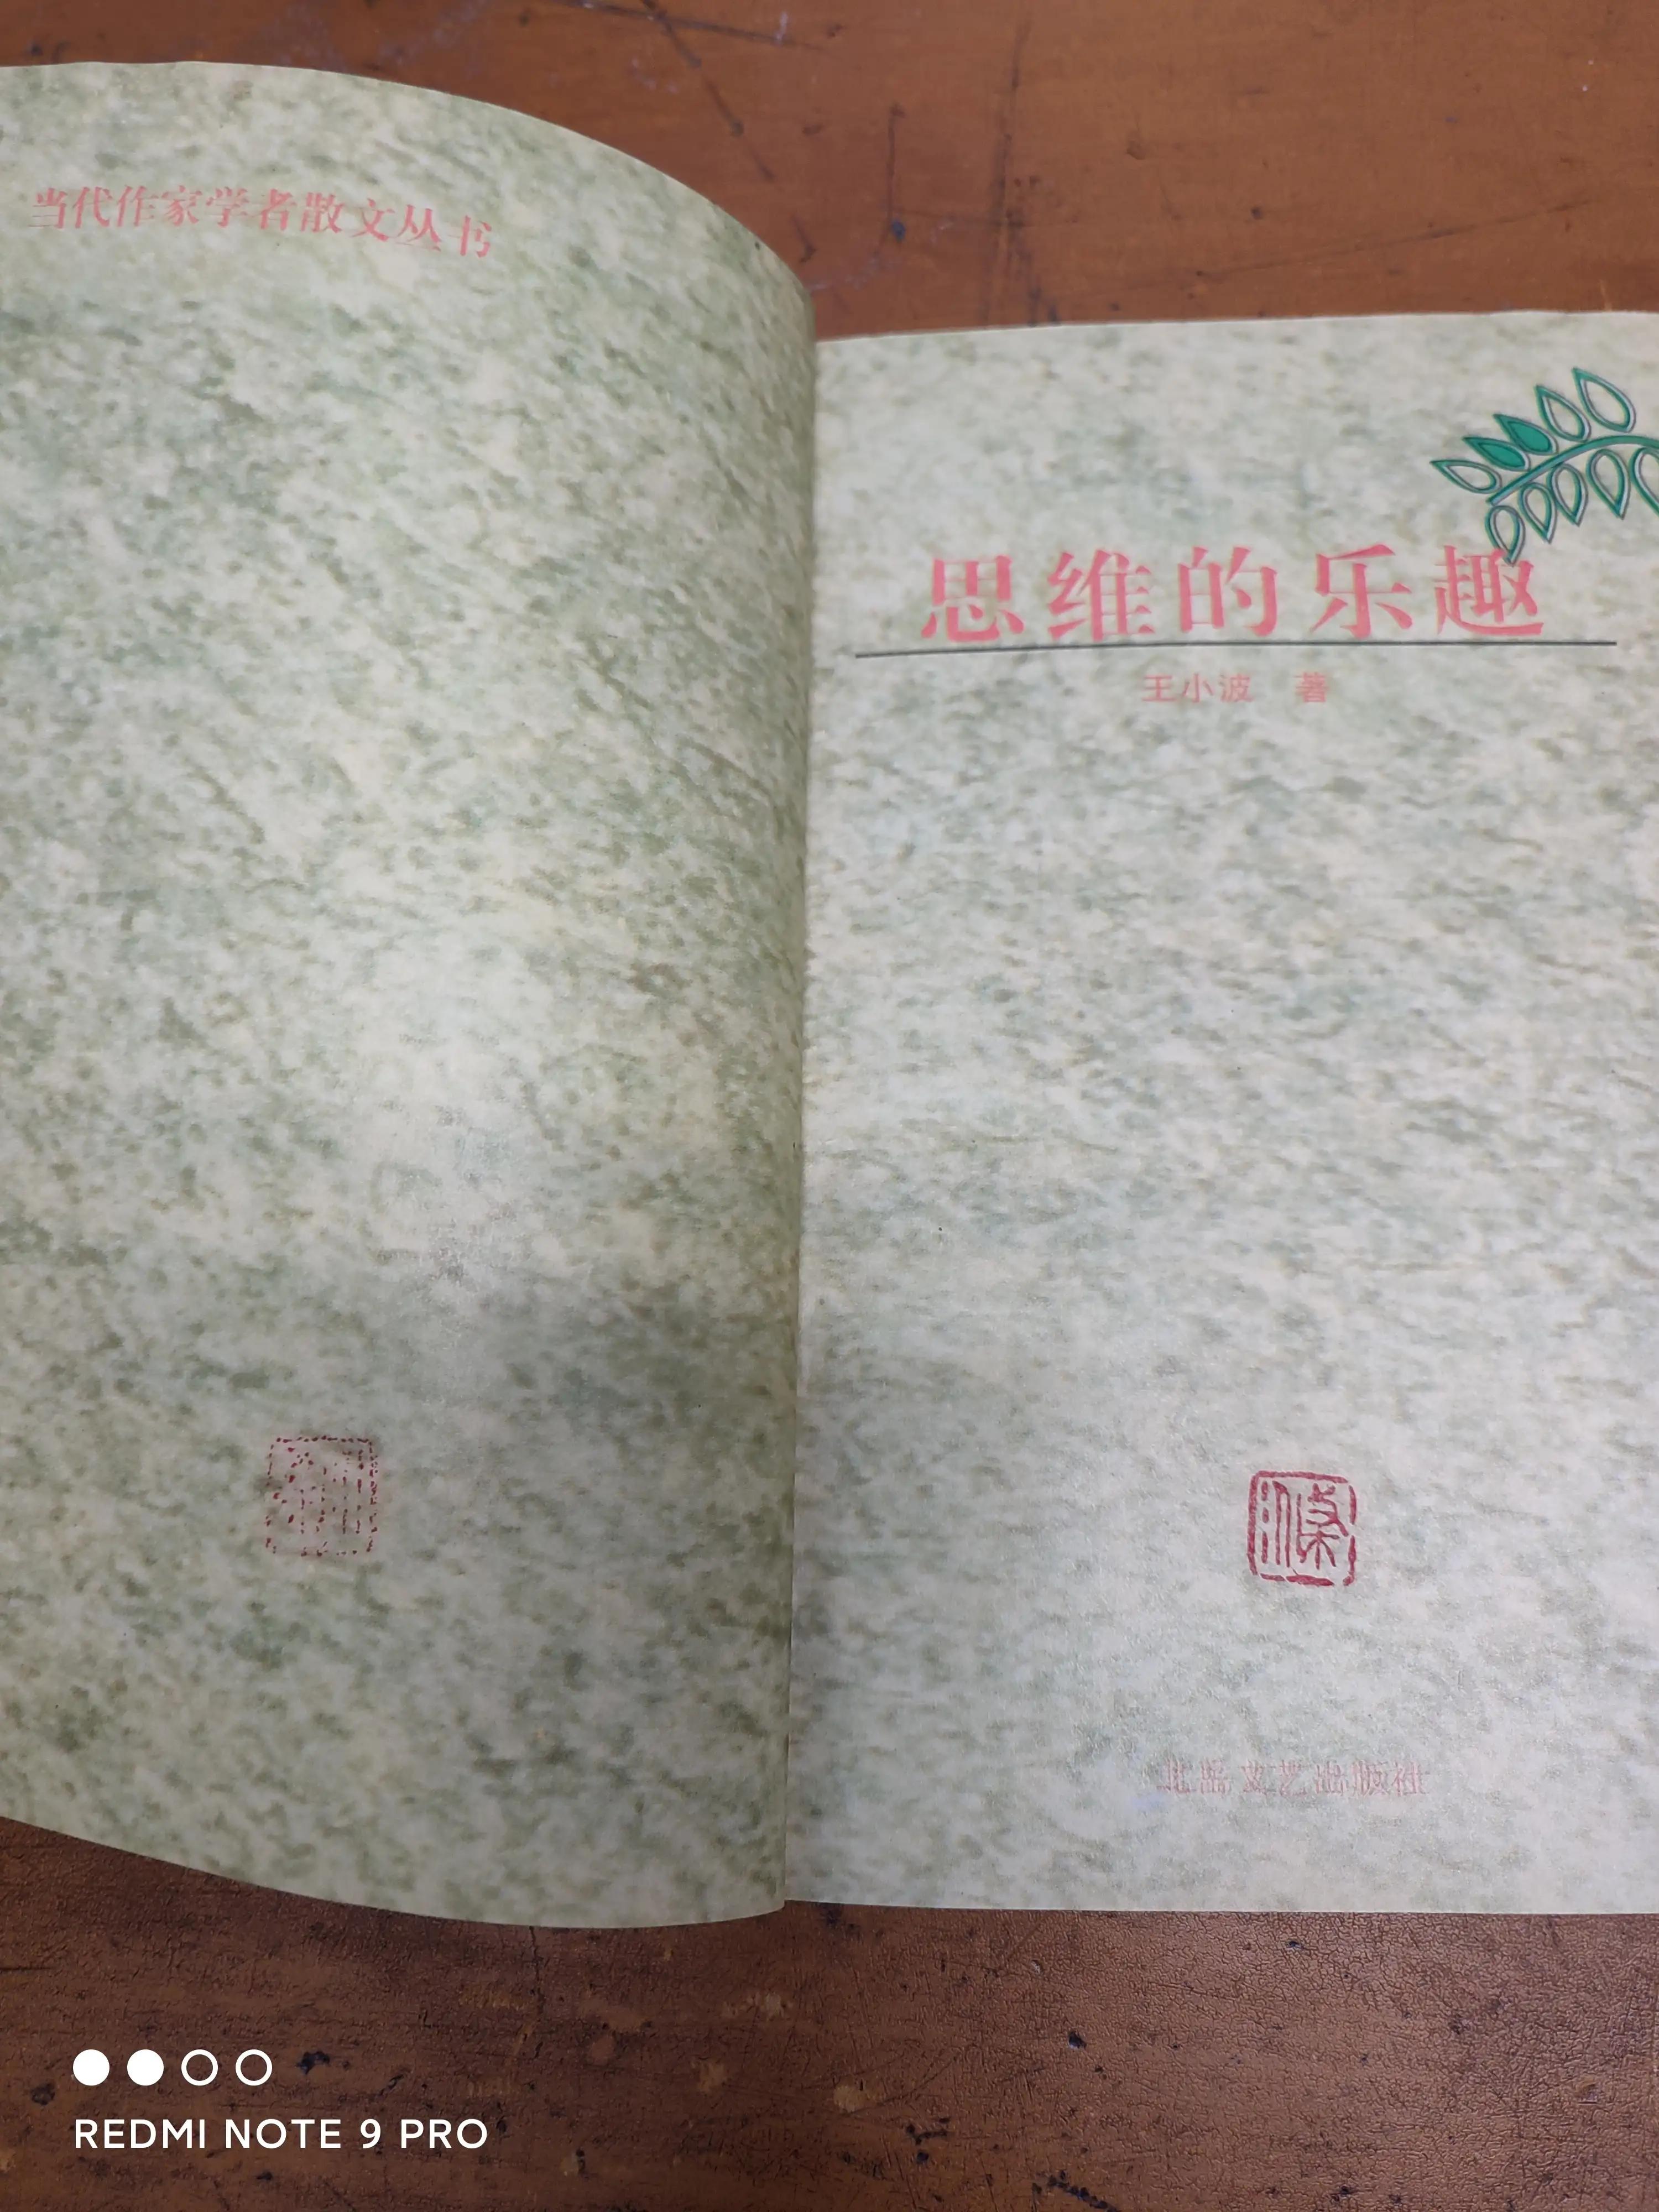 王小波唯一杂文集《思维的乐趣》，1997年1月才印出来